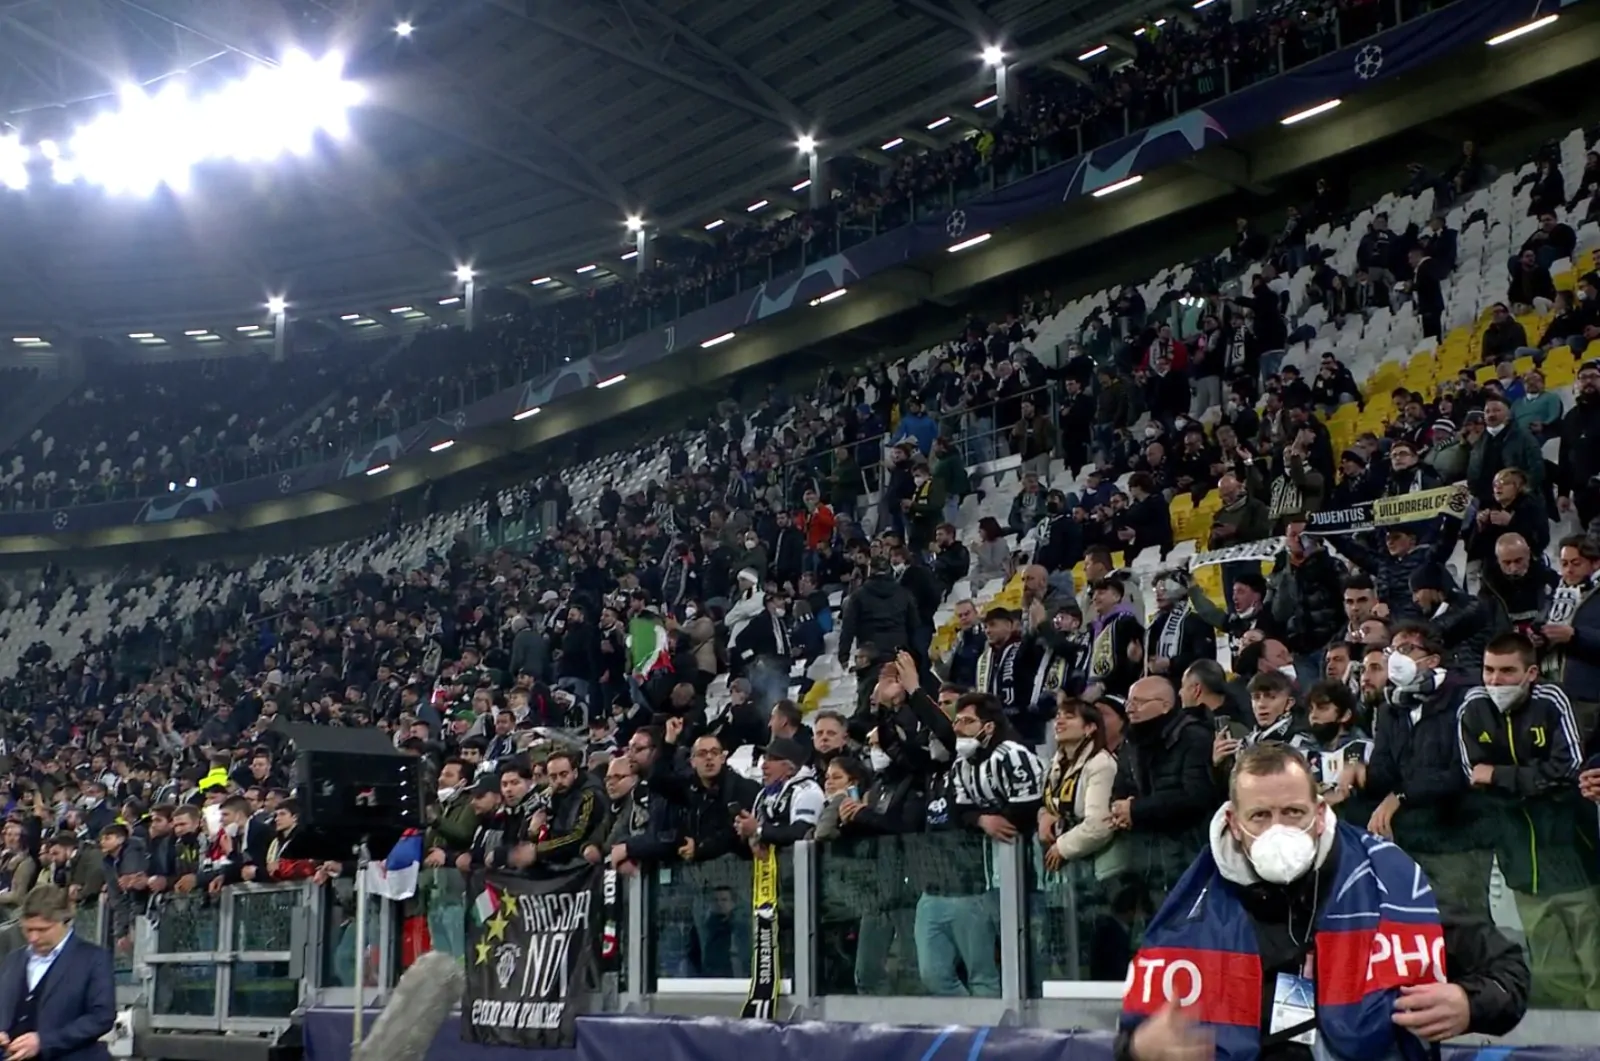 Intervista a bordo campo: succede tra Allegri e i tifosi della Juventus